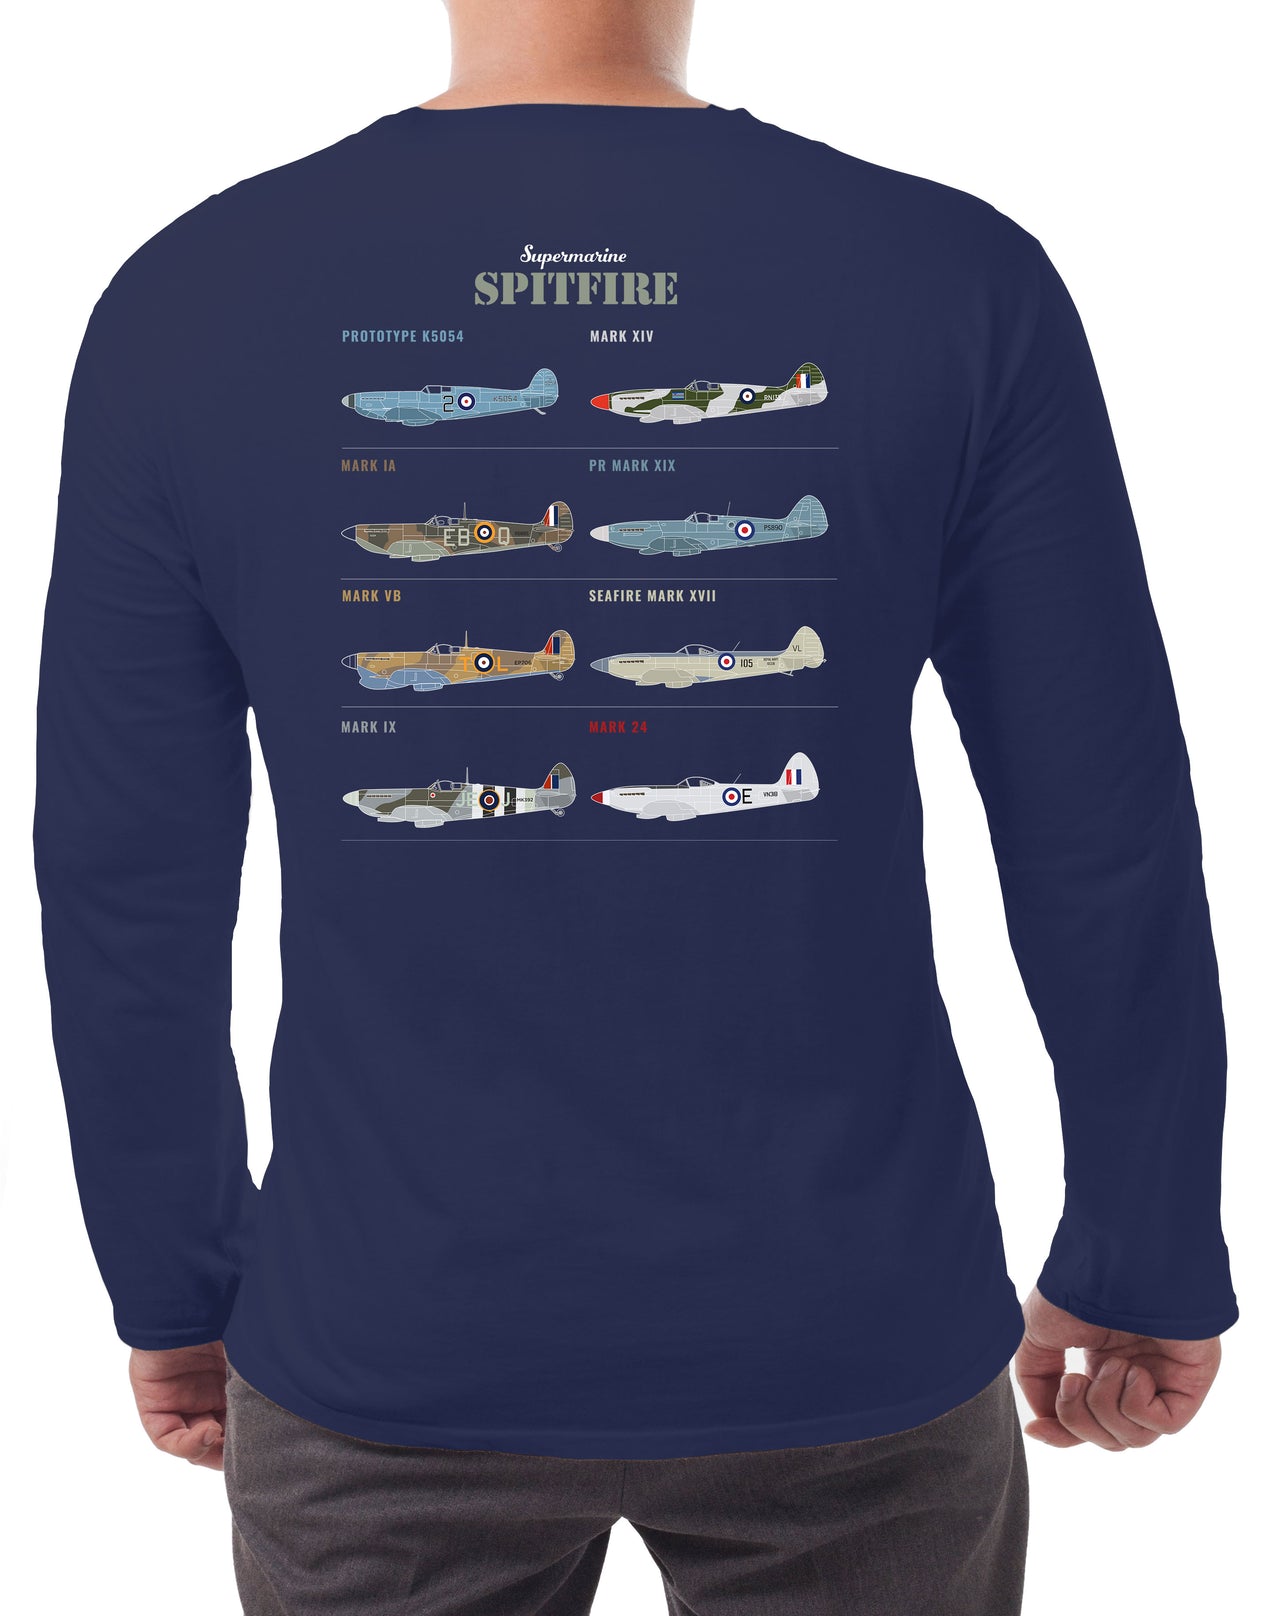 Spitfire MK 24 - Long-sleeve T-shirt